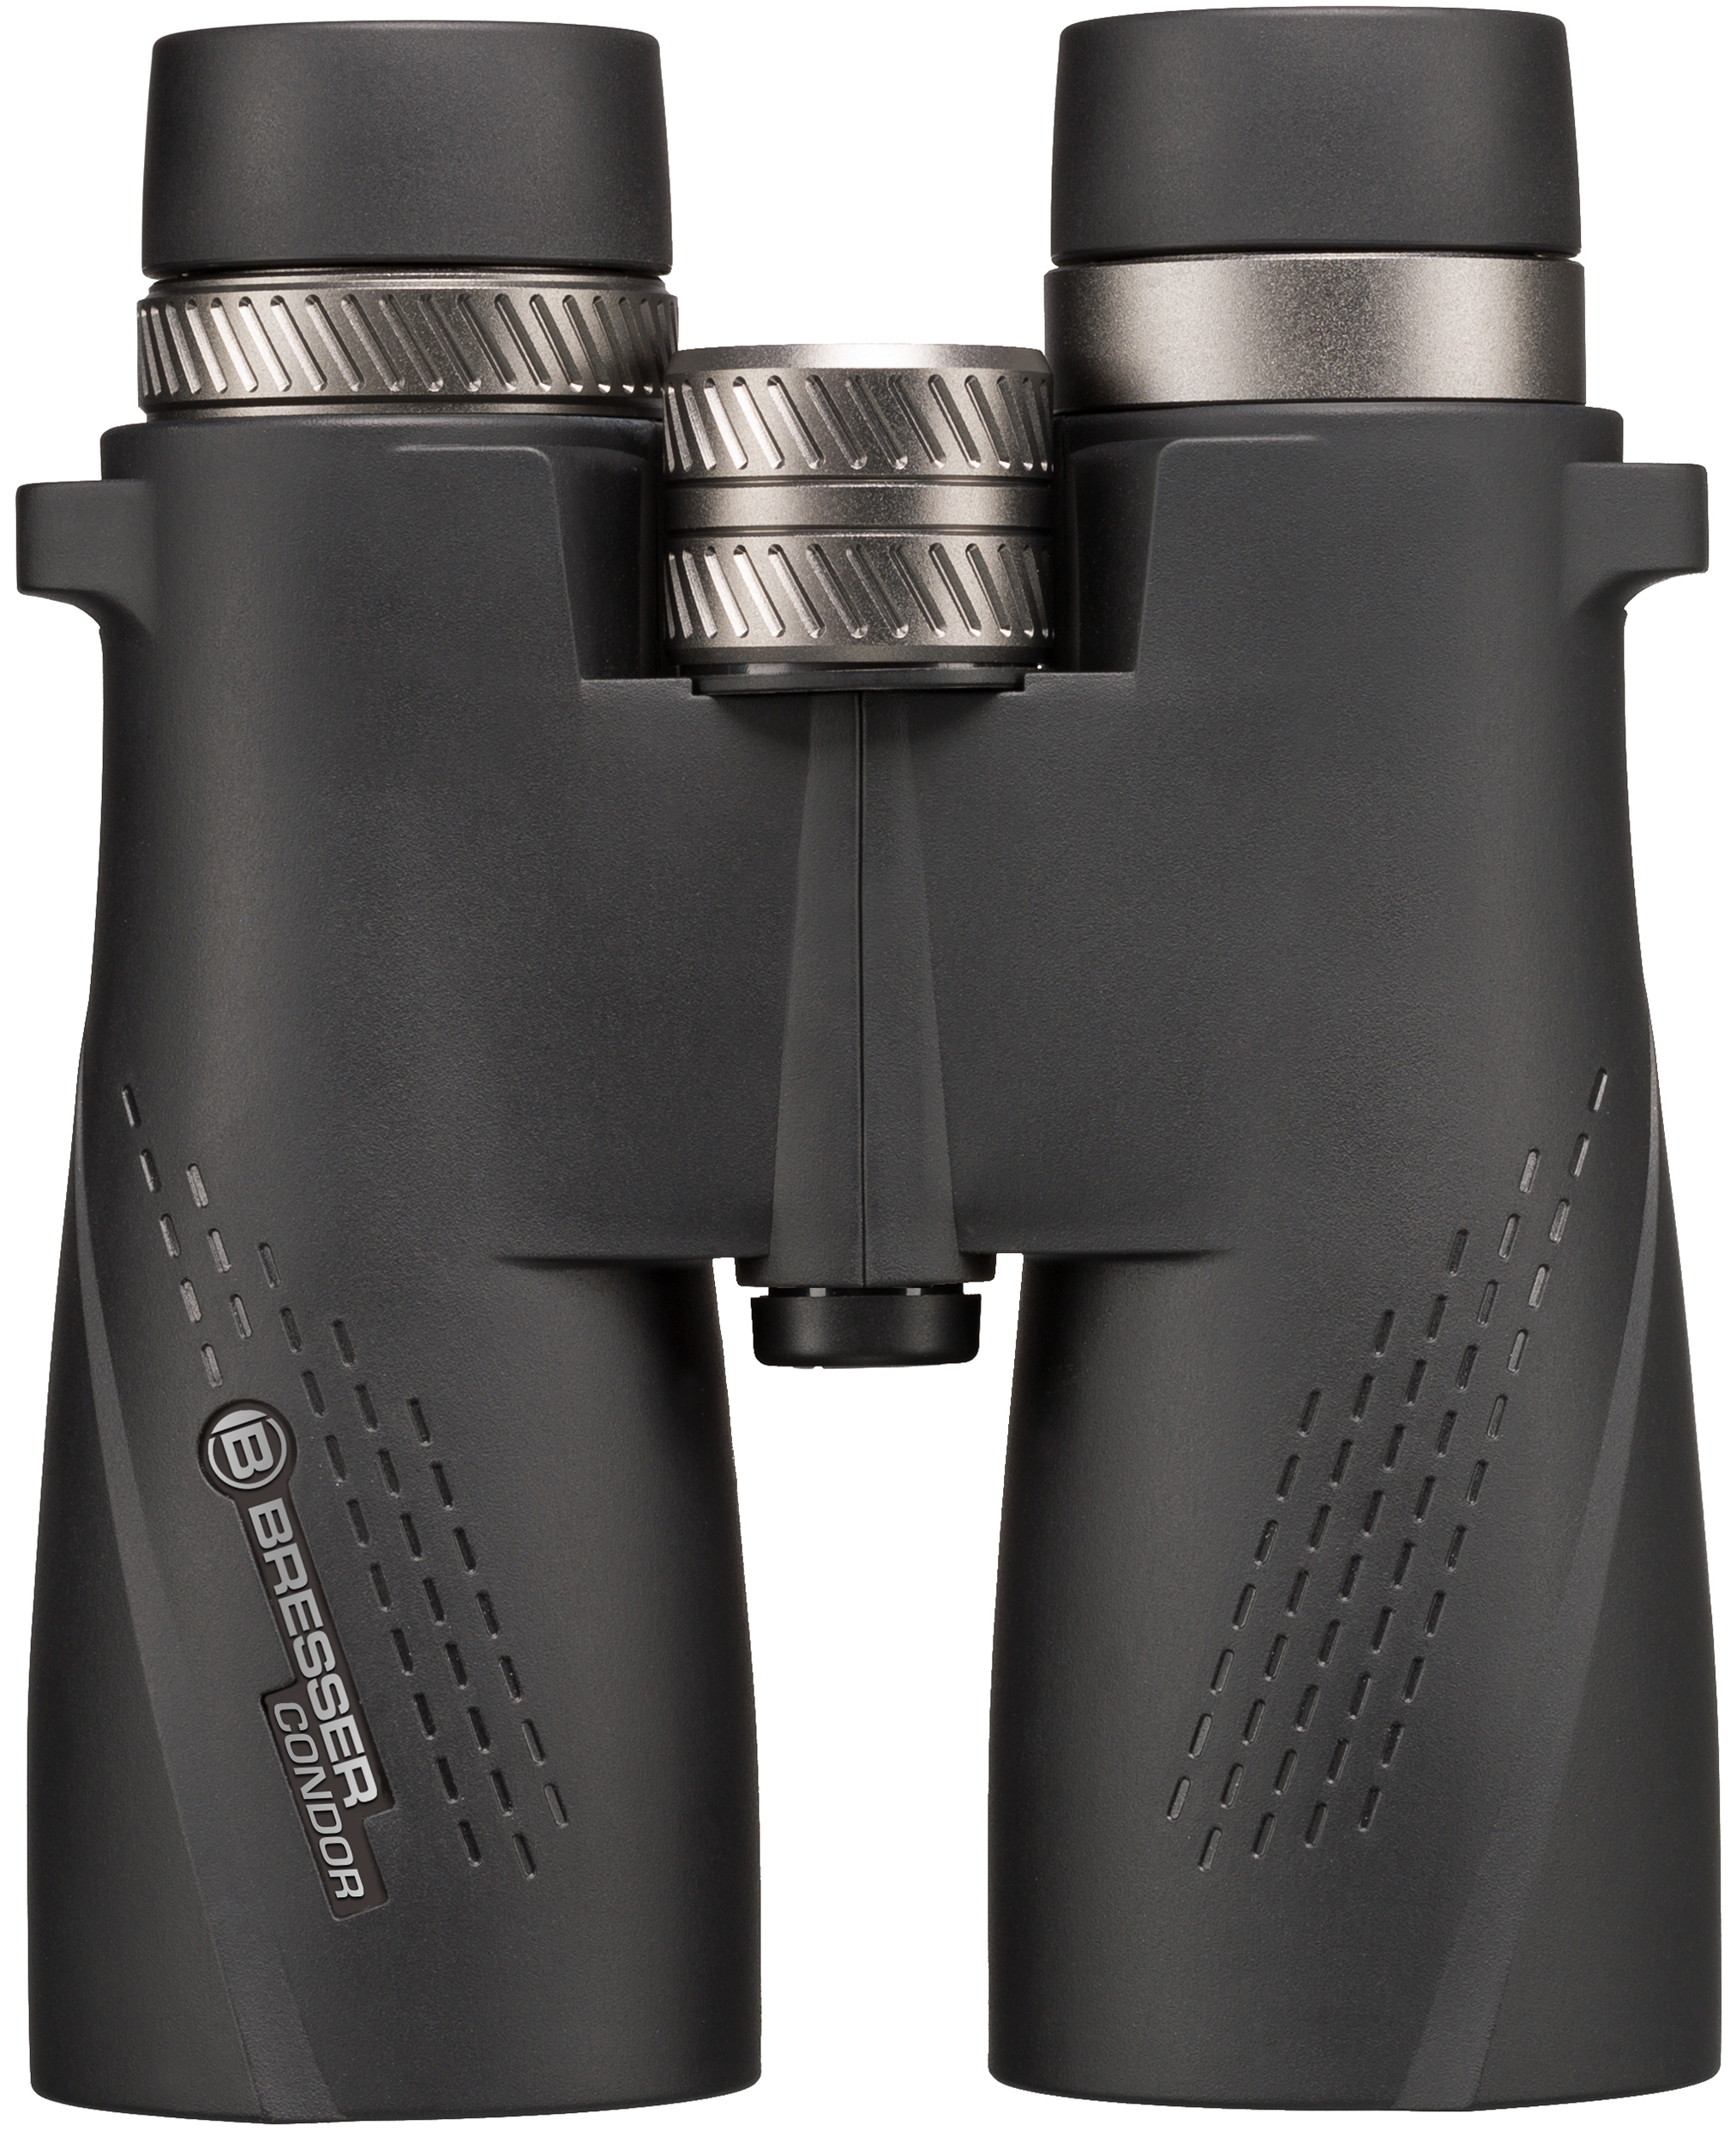 BRESSER Condor 10x50 Binoculars with UR Coating